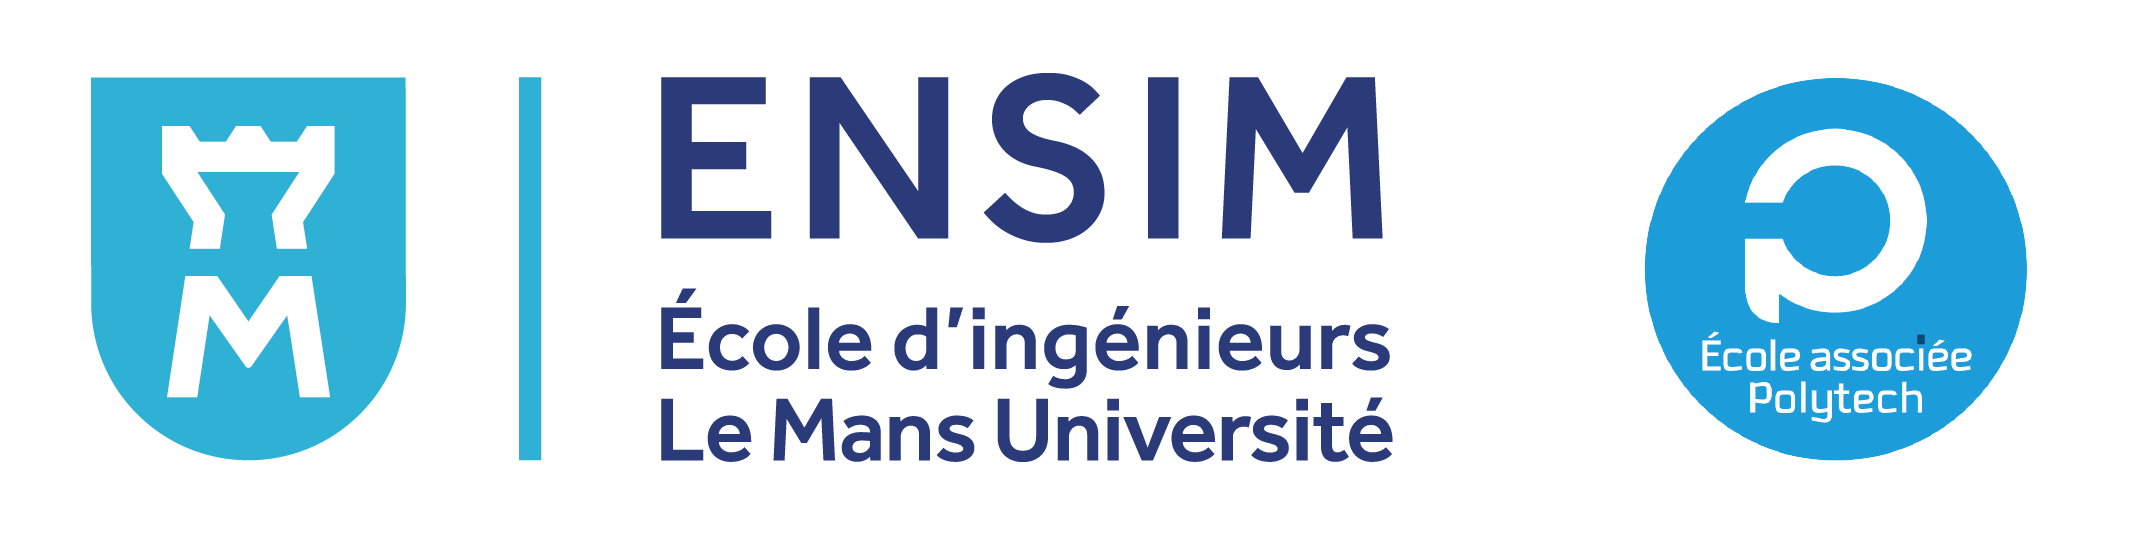 ENSIM logo